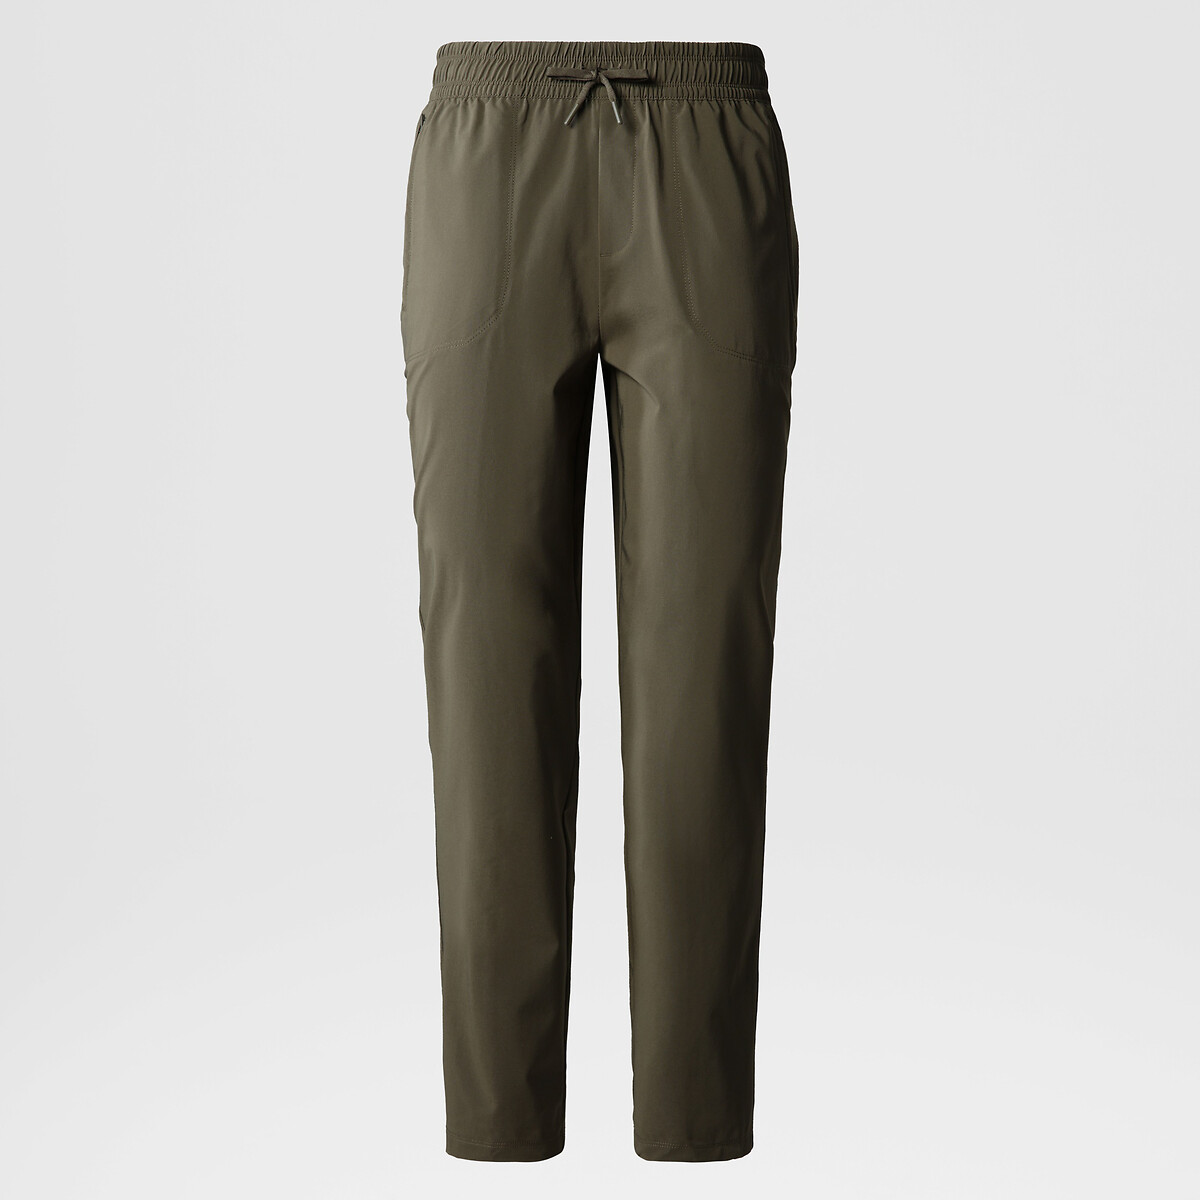 Men's Karrimor Zip Off Cargo Style Walking Trousers Pants Size UK L in  Grey | eBay